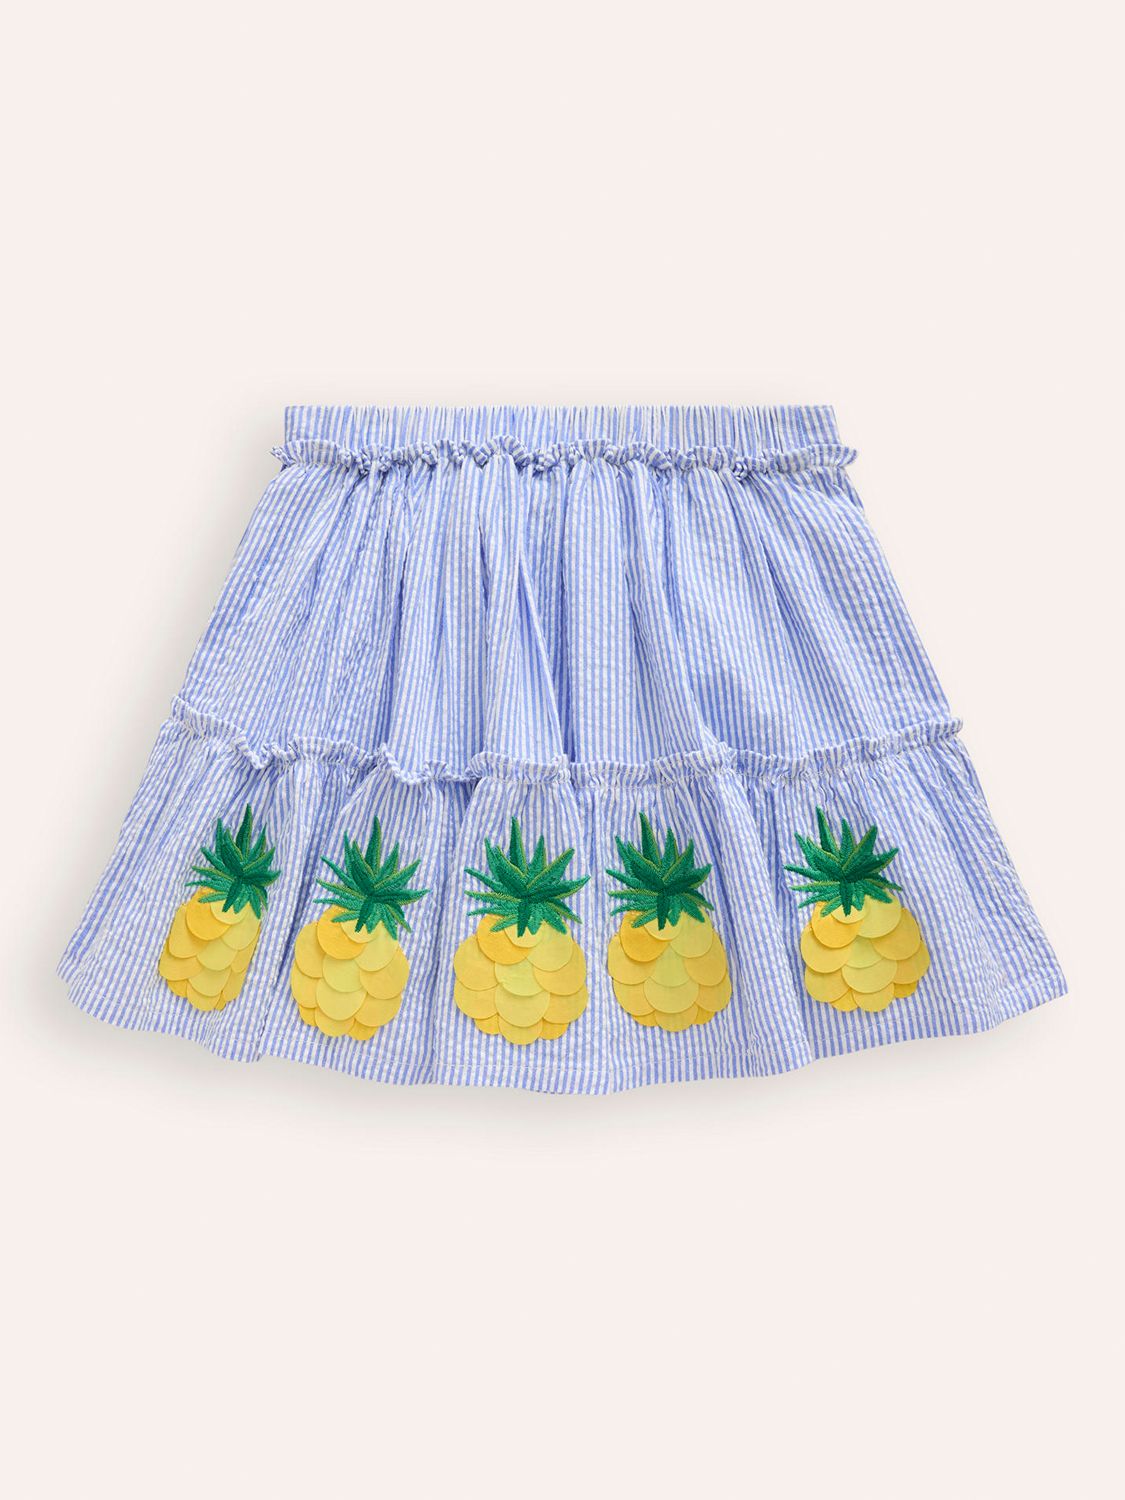 Mini Boden Kids' Appliqué Skirt, Ivory/Surf Blue, 2-3 years